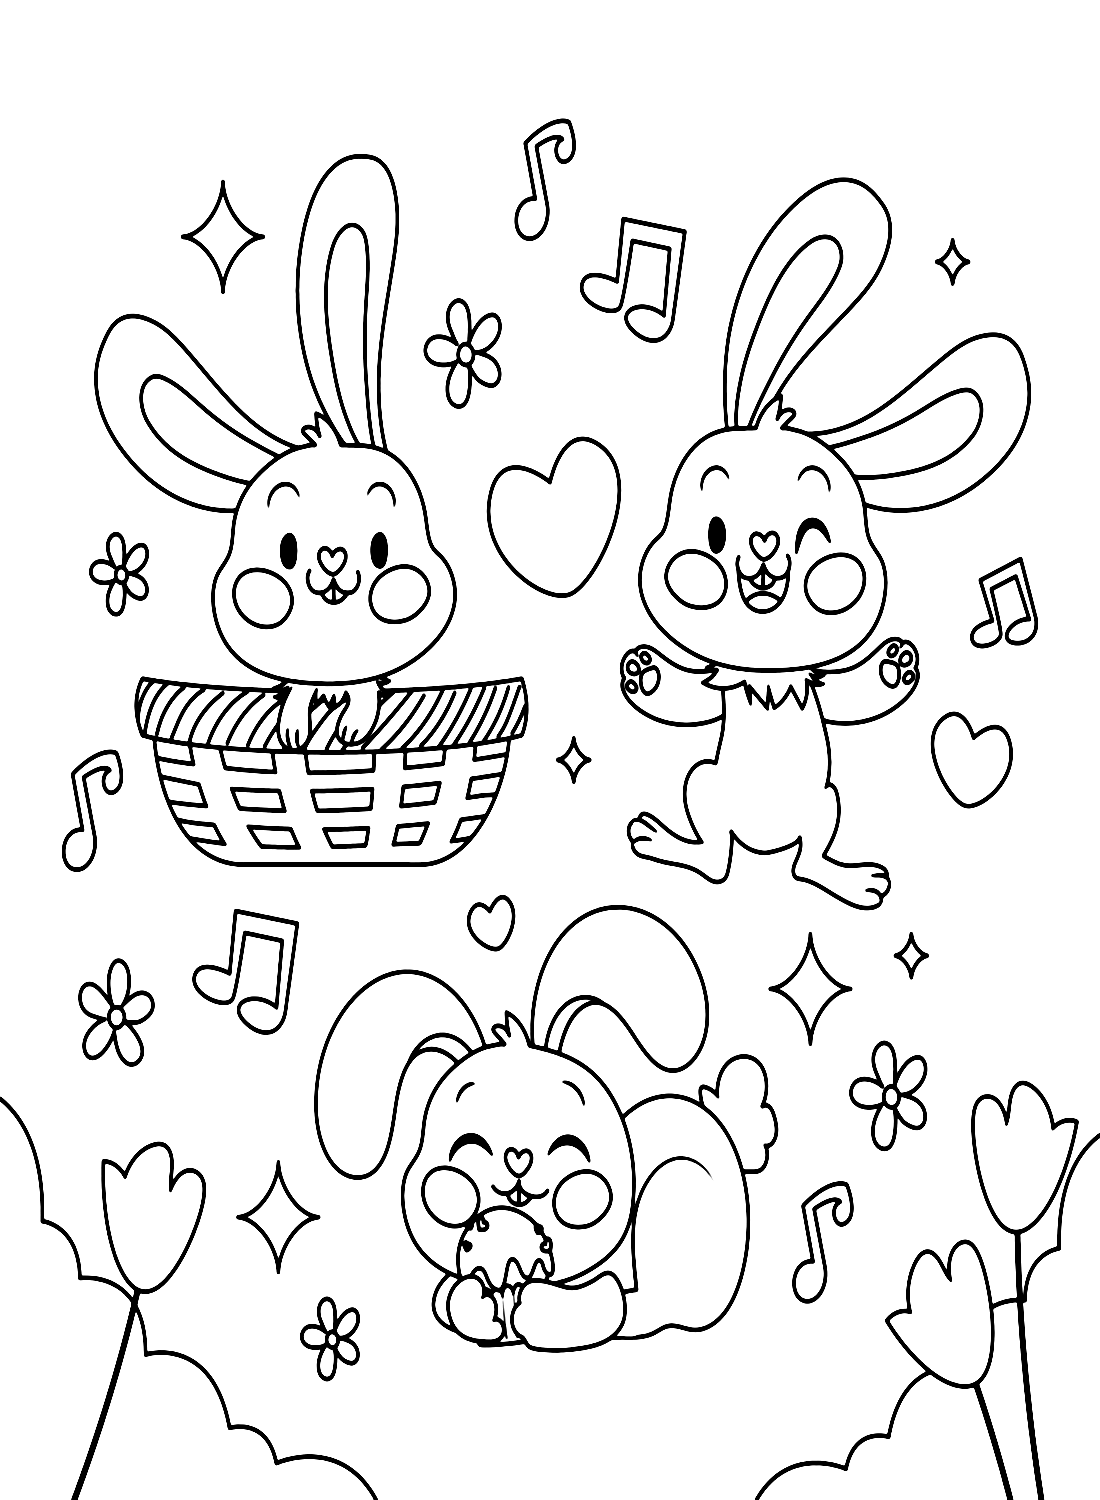 ثلاثة أرانب يستمتعون بالموسيقى من الأرنب